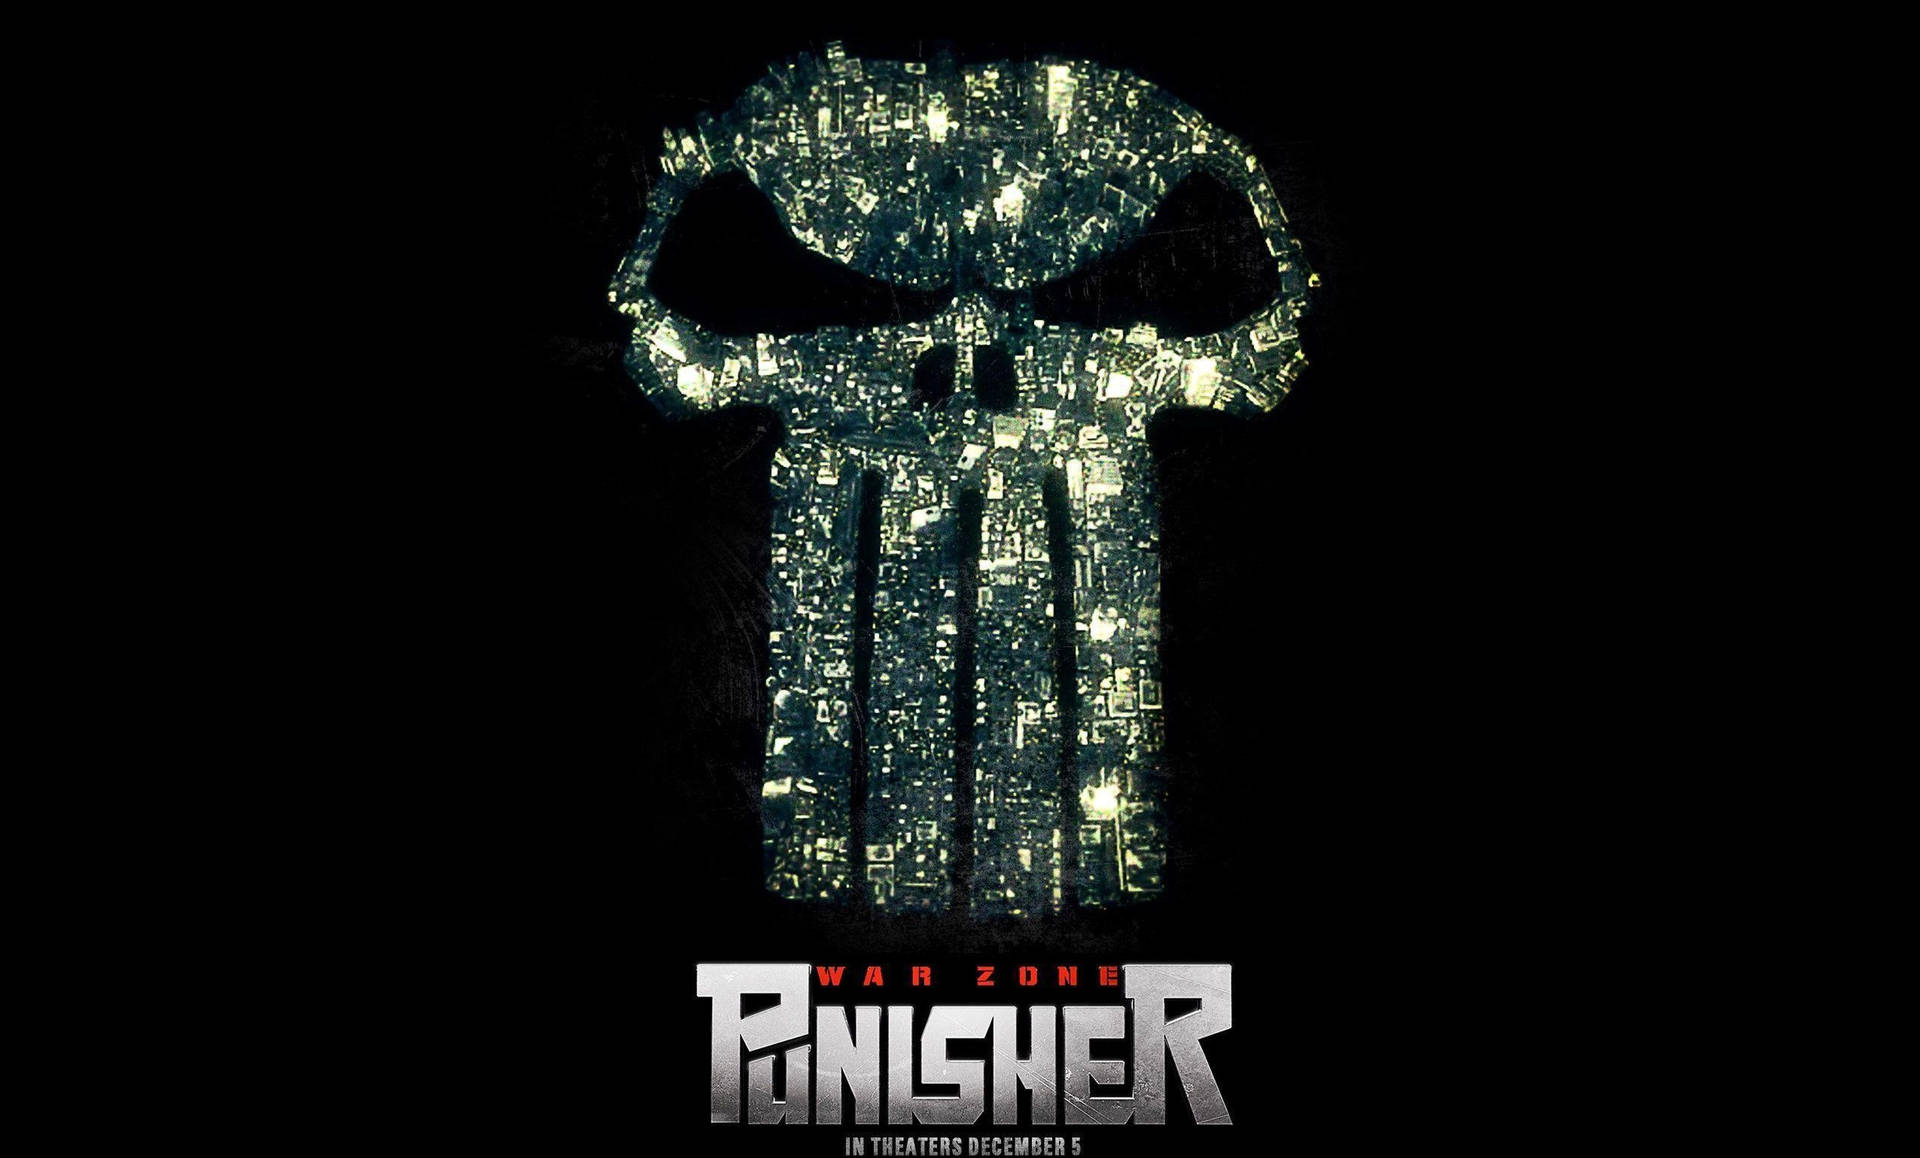 Punisher Skull Movie Poster Wallpaper